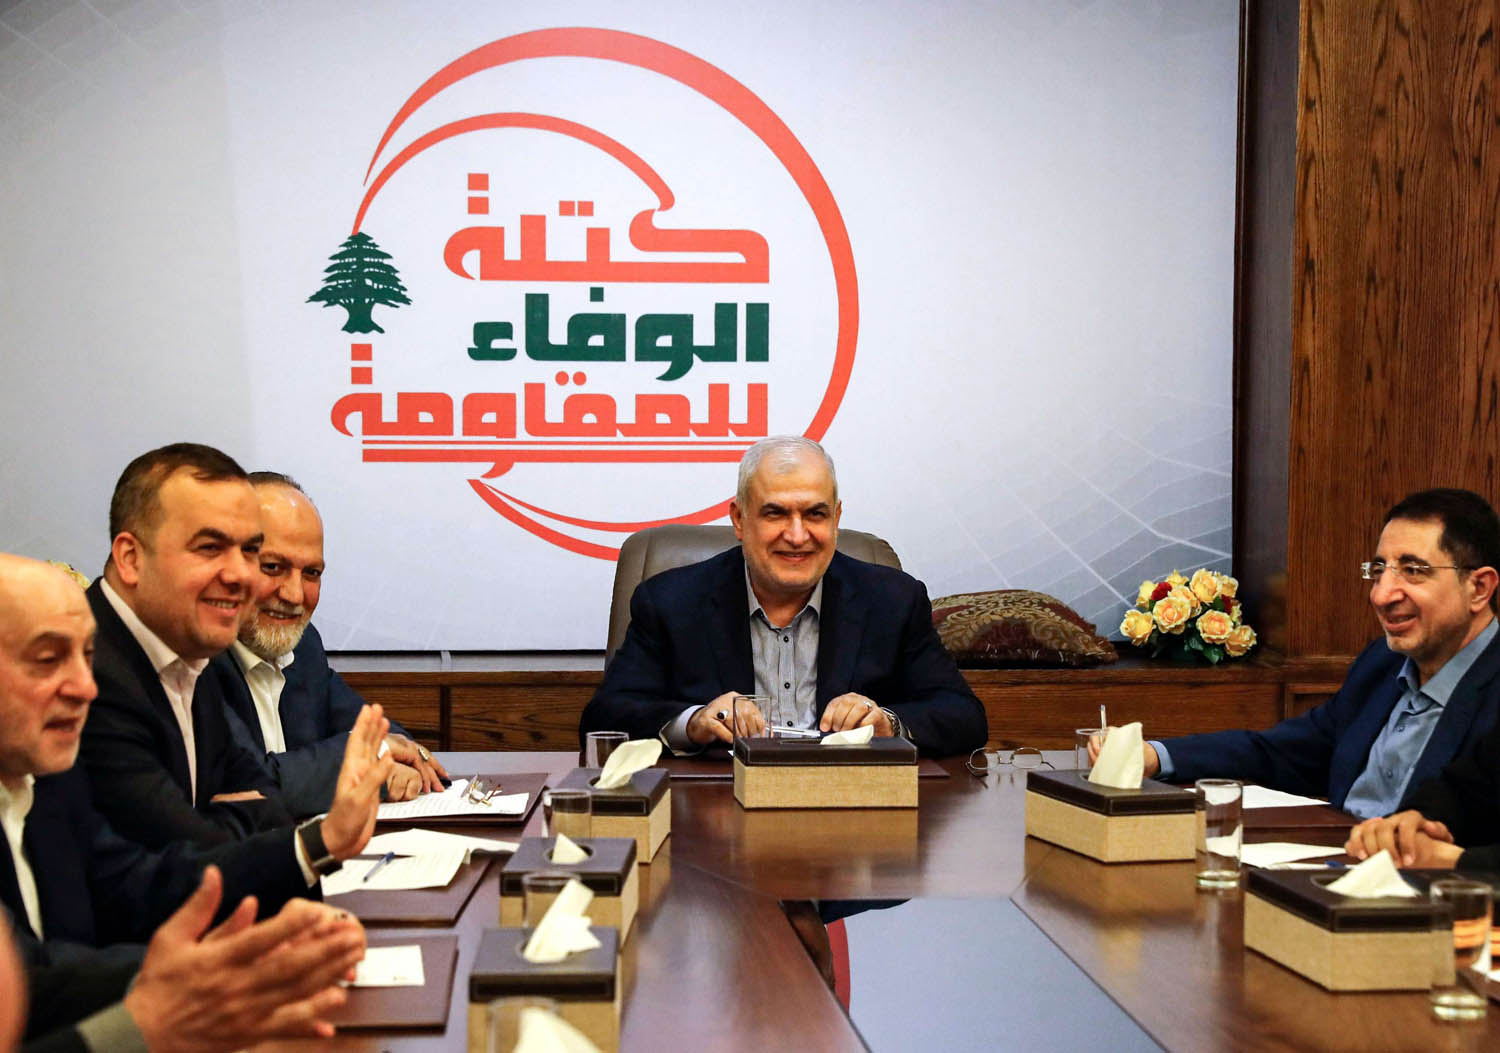 برلمانيون لبنانيون أعضاء في حزب الله في اجتماع بعد وضع بعضهم على قائمة العقوبات الأميركية